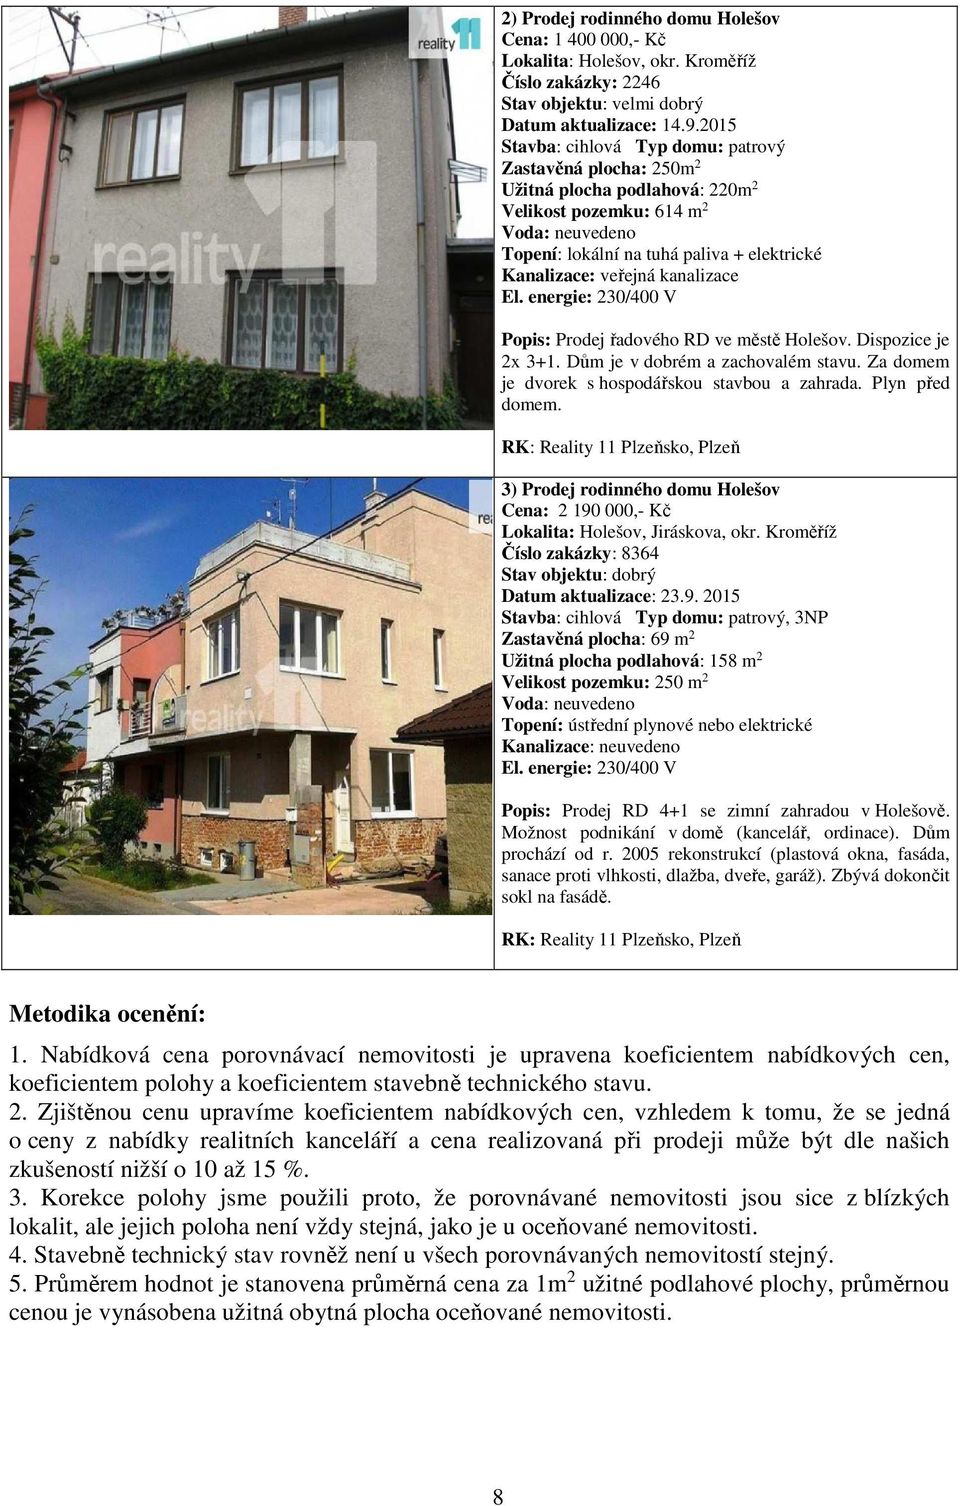 veřejná kanalizace El. energie: 230/400 V Popis: Prodej řadového RD ve městě Holešov. Dispozice je 2x 3+1. Dům je v dobrém a zachovalém stavu. Za domem je dvorek s hospodářskou stavbou a zahrada.